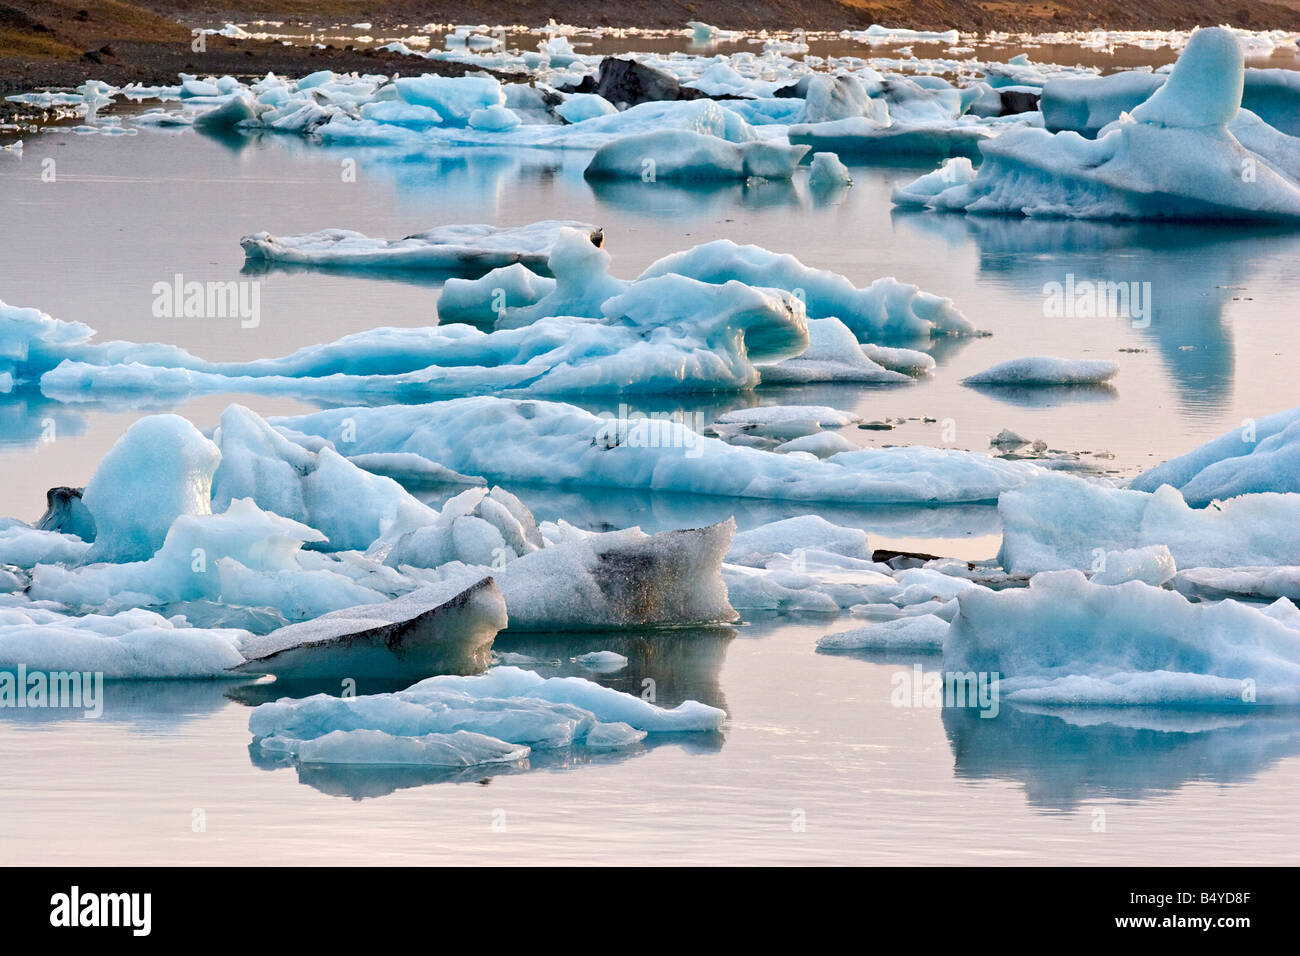 Jokulsarlon glacier ice lagoon, Iceland. Stock Photo